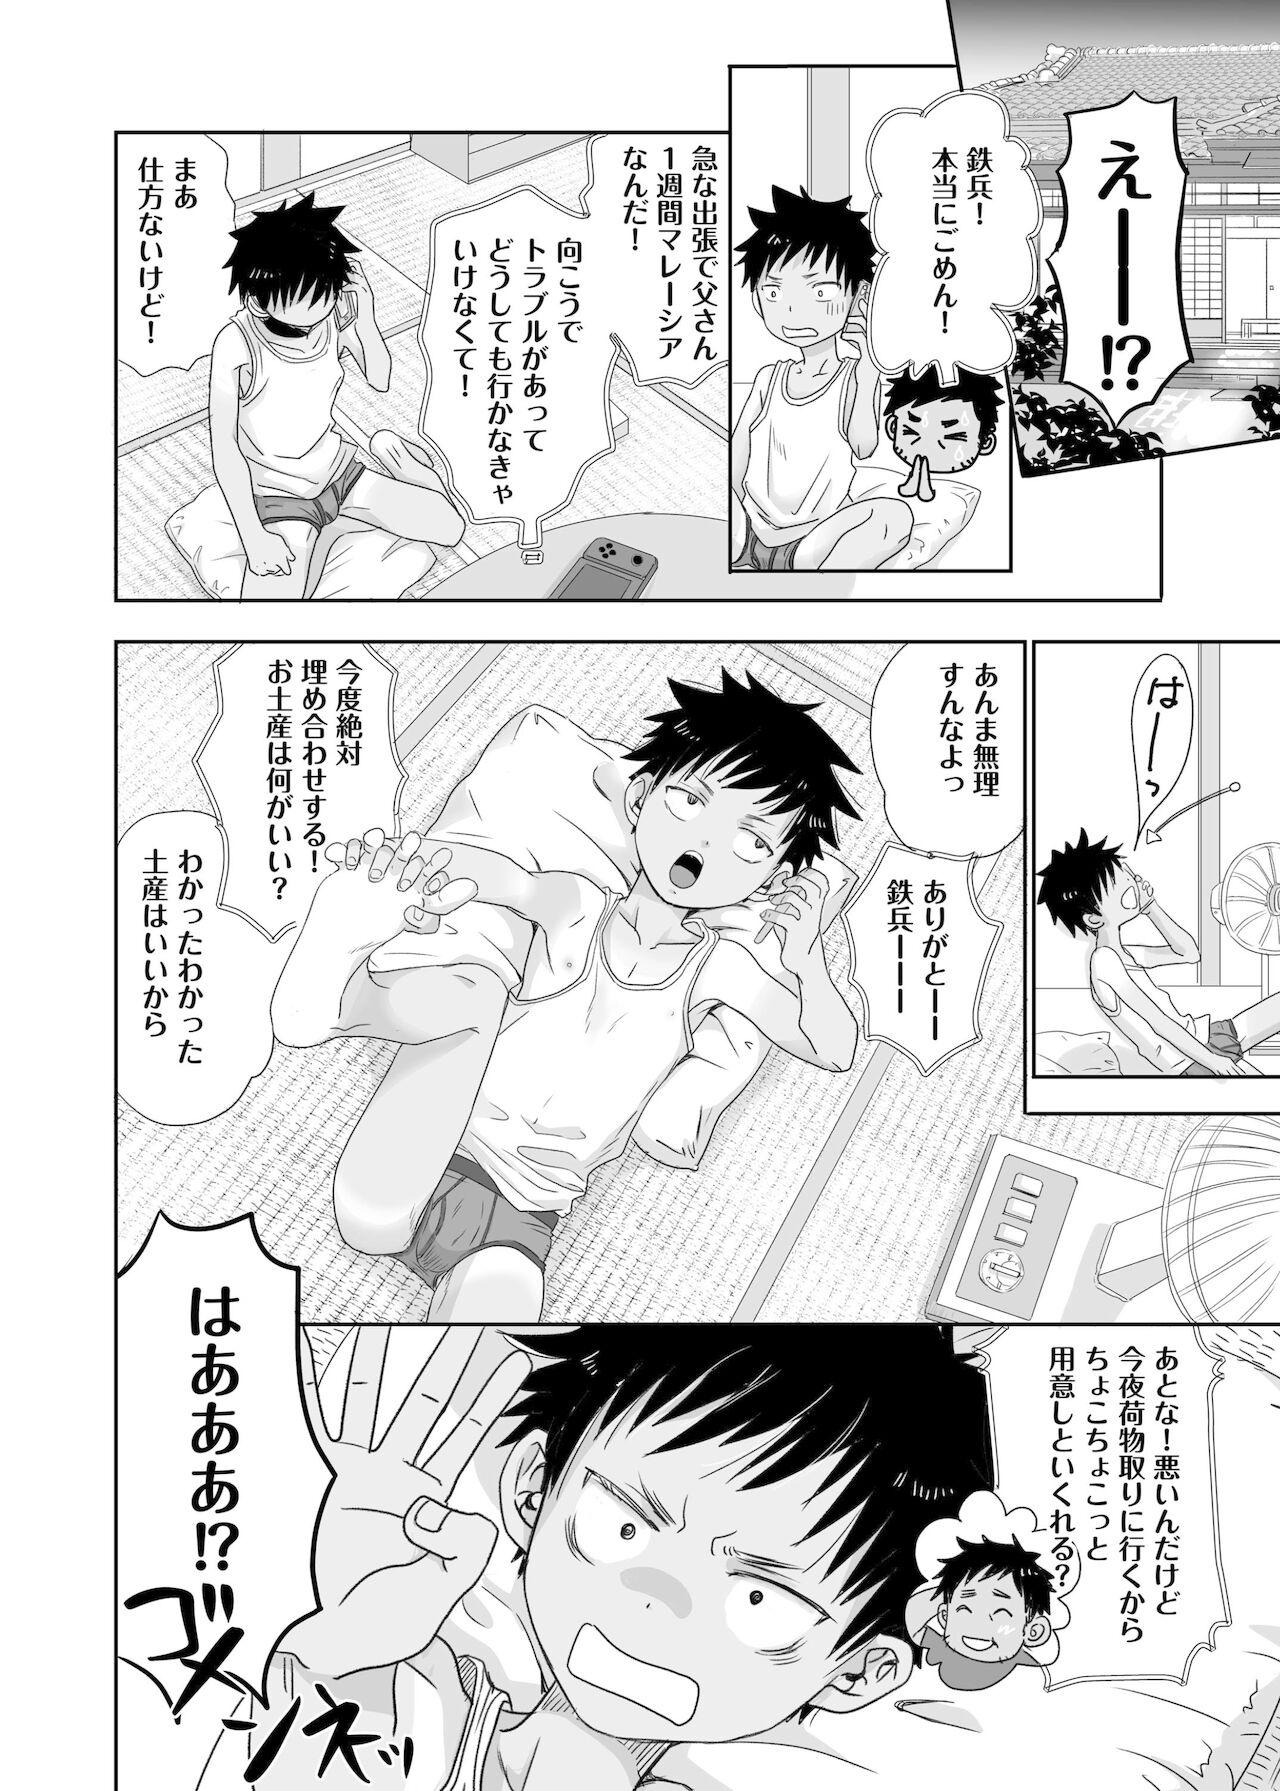 Petite Teen Tonari no oniisan no Karada ga sugokute ki ni naru. Baile - Page 6